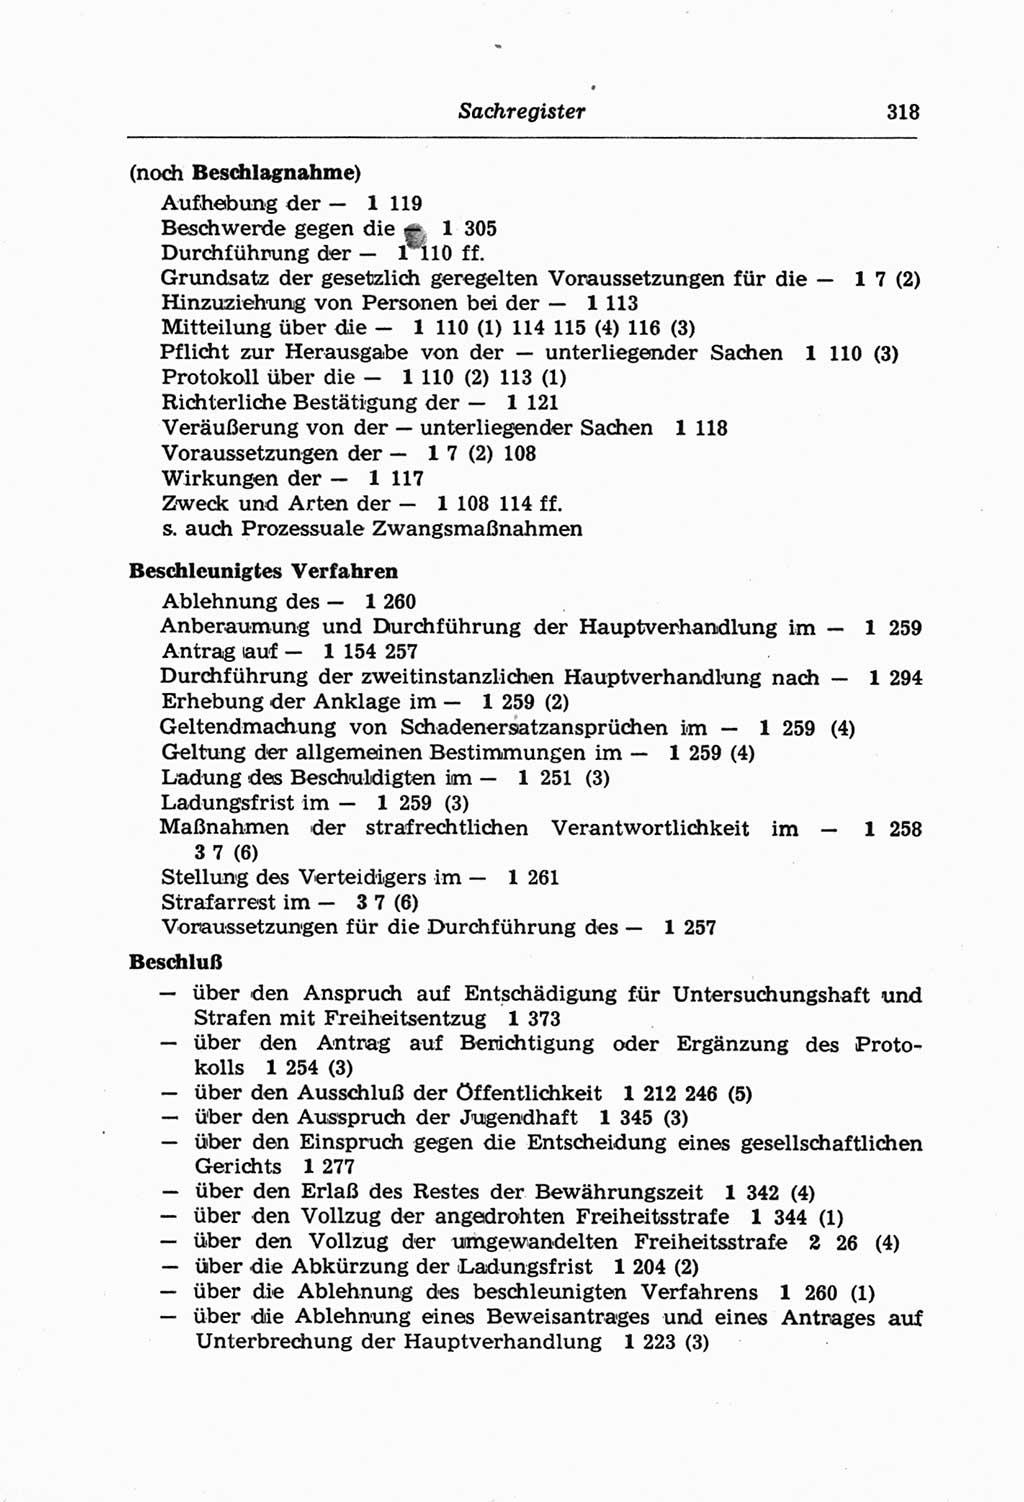 Strafprozeßordnung (StPO) der Deutschen Demokratischen Republik (DDR) und angrenzende Gesetze und Bestimmungen 1968, Seite 318 (StPO Ges. Bstgn. DDR 1968, S. 318)